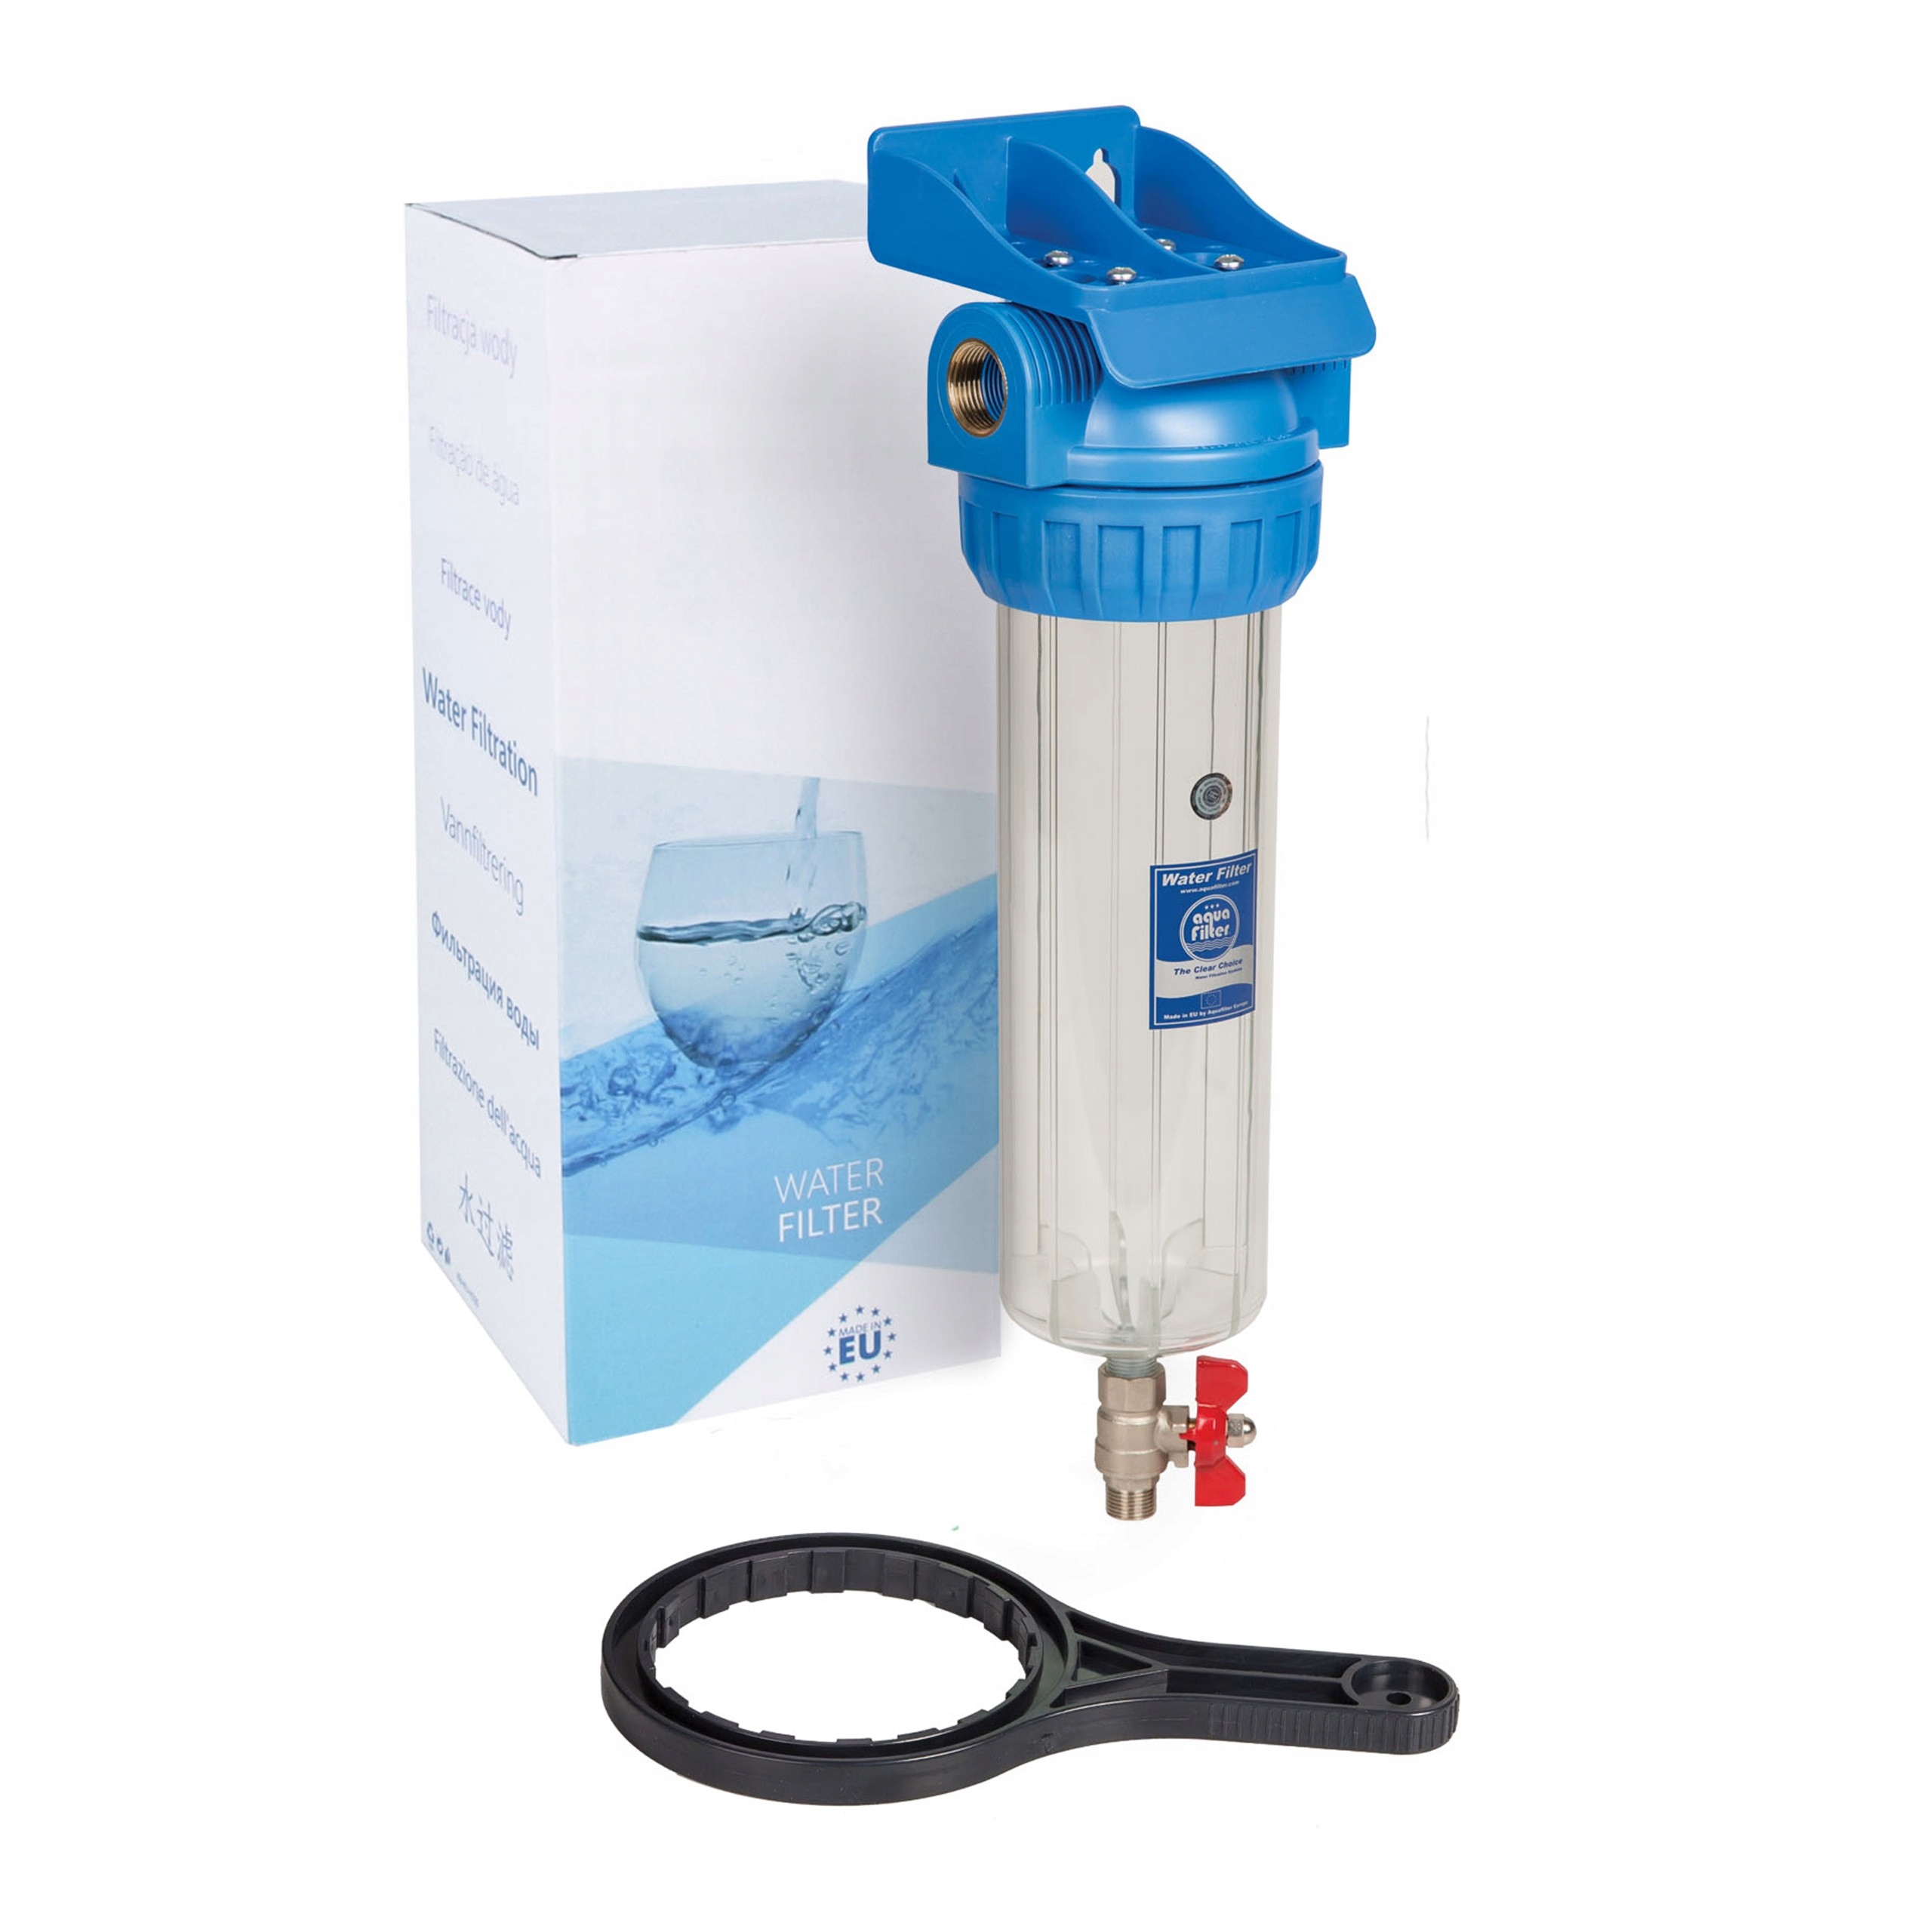 Фильтр для воды 10 sl. Фильтр Aquafilter fhpr1-hp1. Фильтр магистральный Aquafilter h10g-fhpr34-3vr. Колба sl10 1/2 Аквафор. Корпус фильтра Aquafilter fhpr12-3v_r.